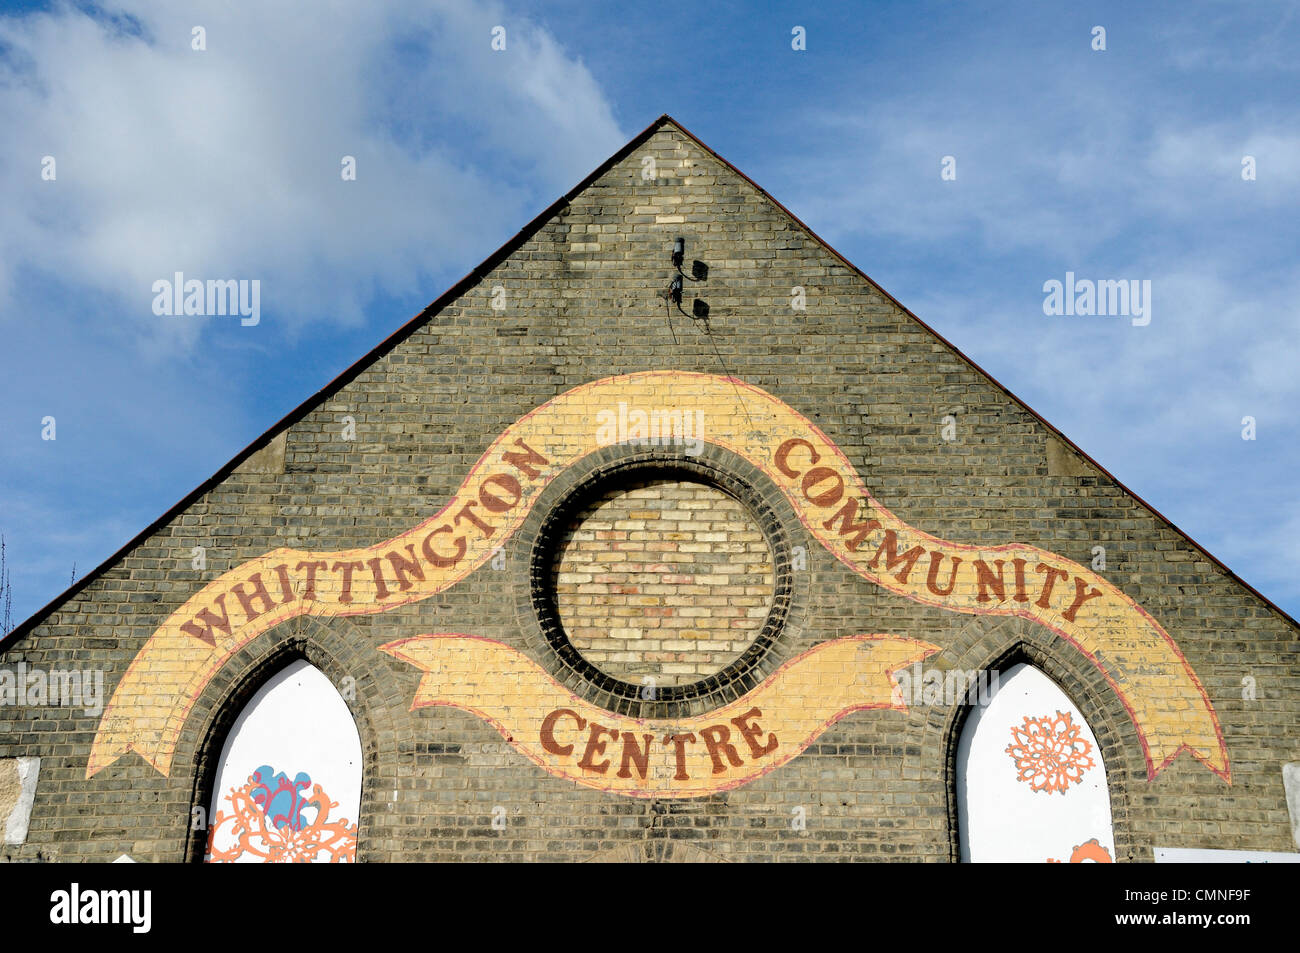 Whittington Community Centre peint sur briques rouges, Whittington Park, Holloway, Londres UK Banque D'Images